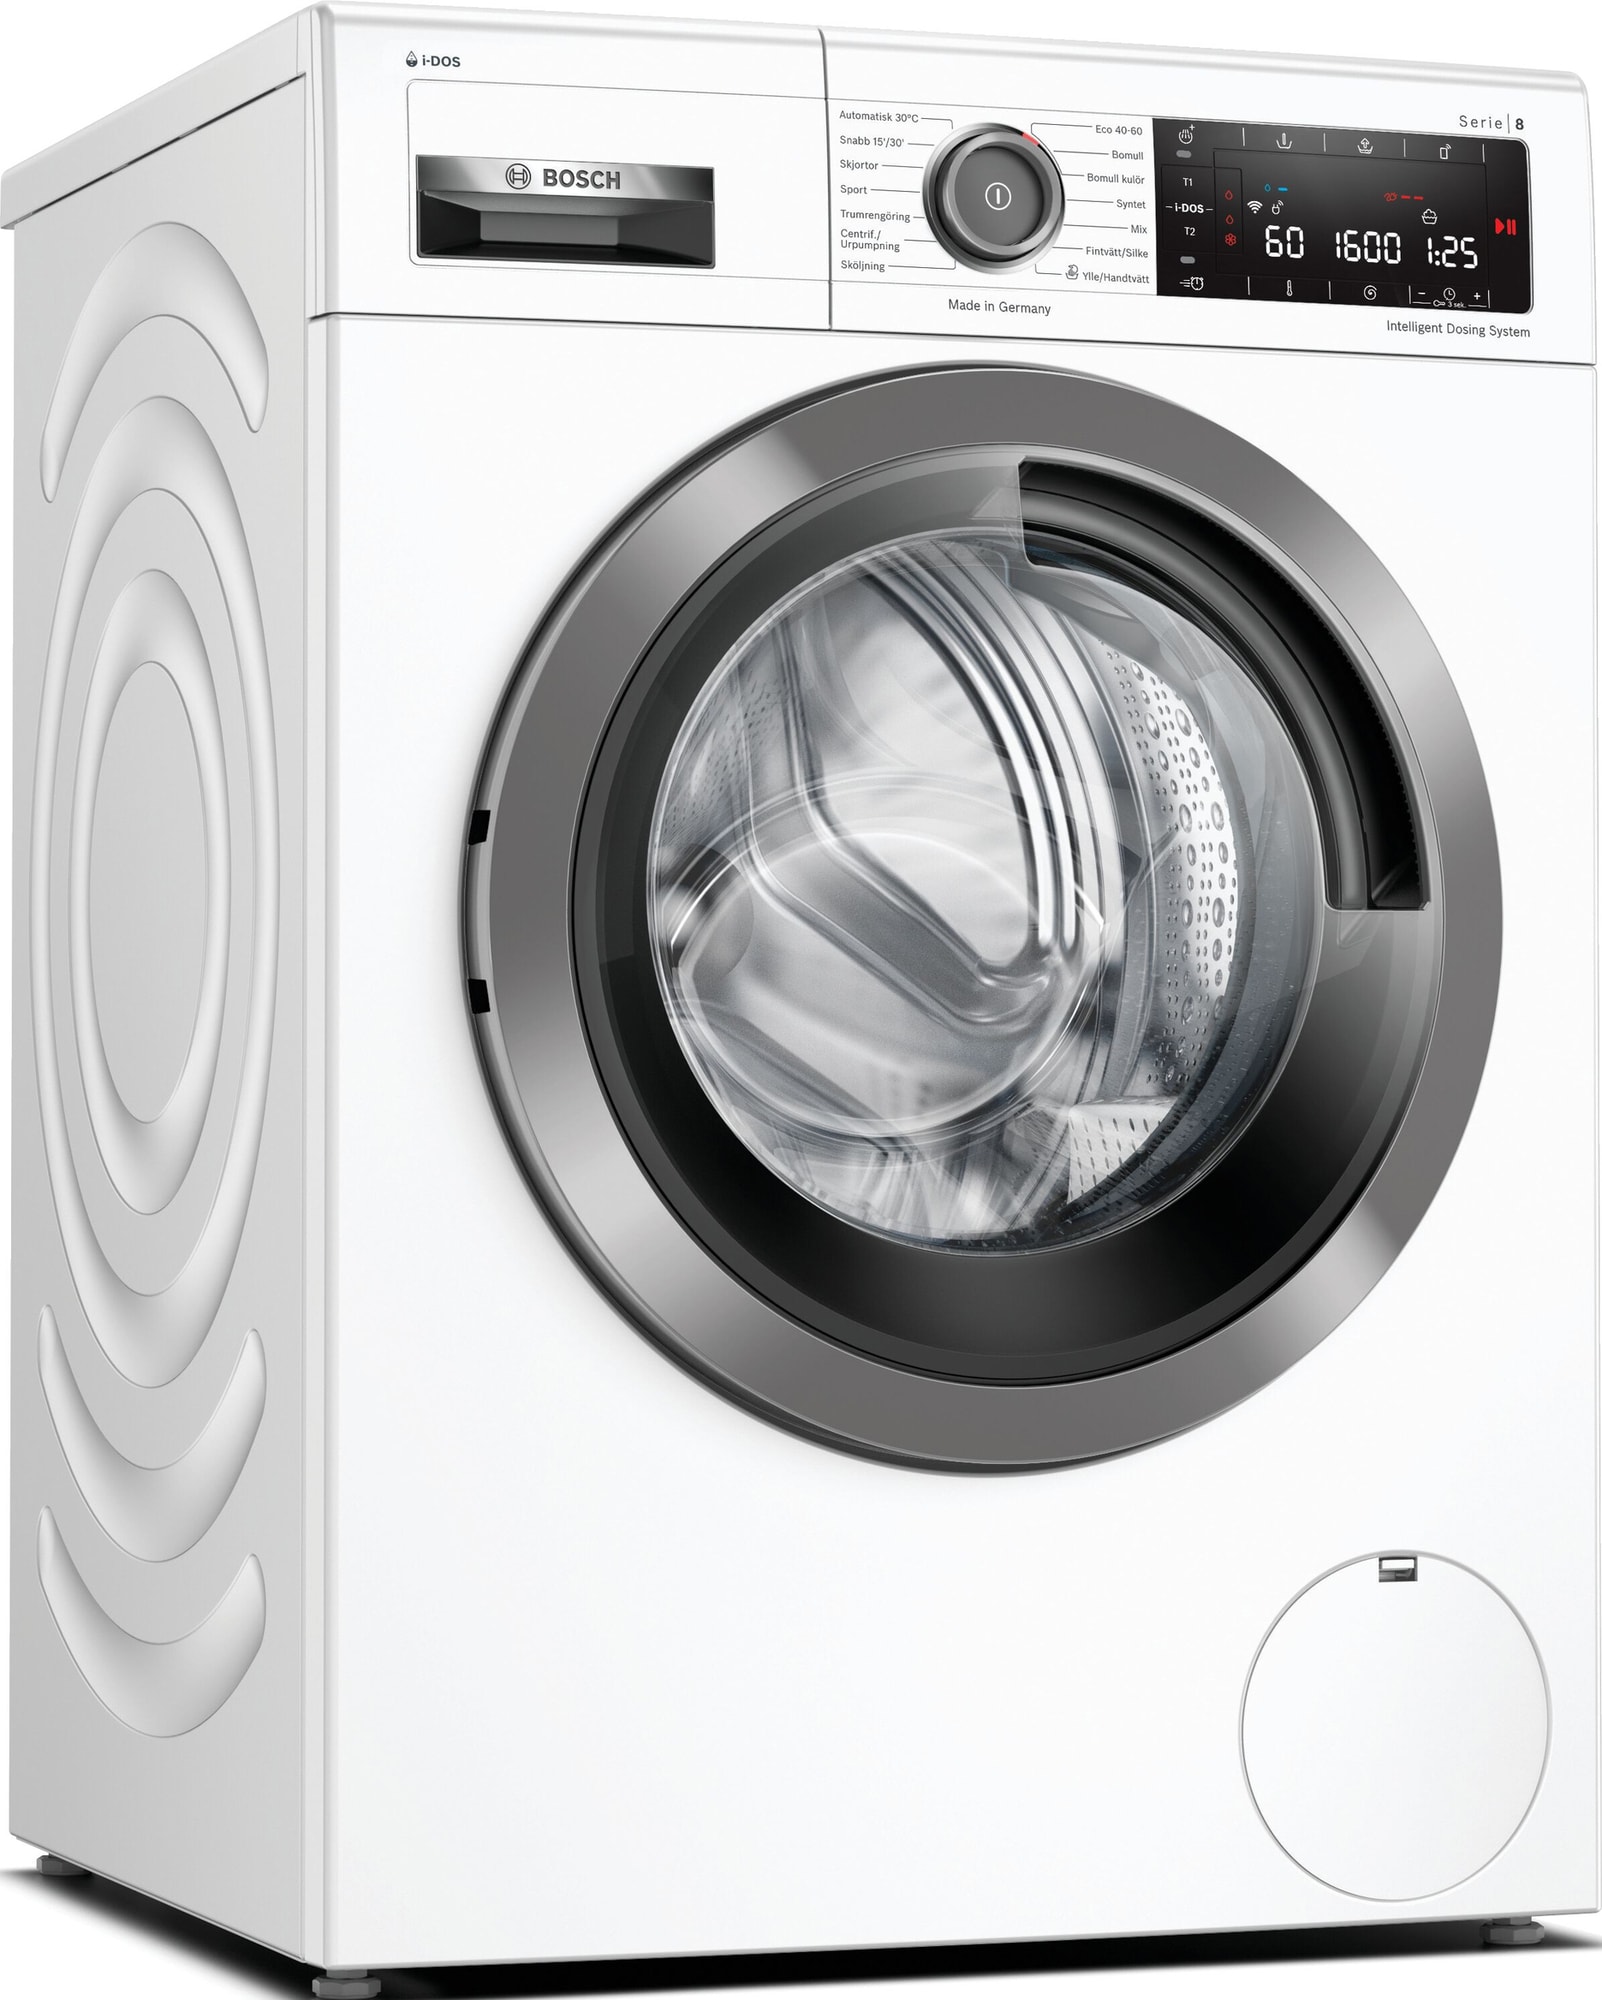 Bedste vaskemaskiner i test og pris Tit billige tilbud -